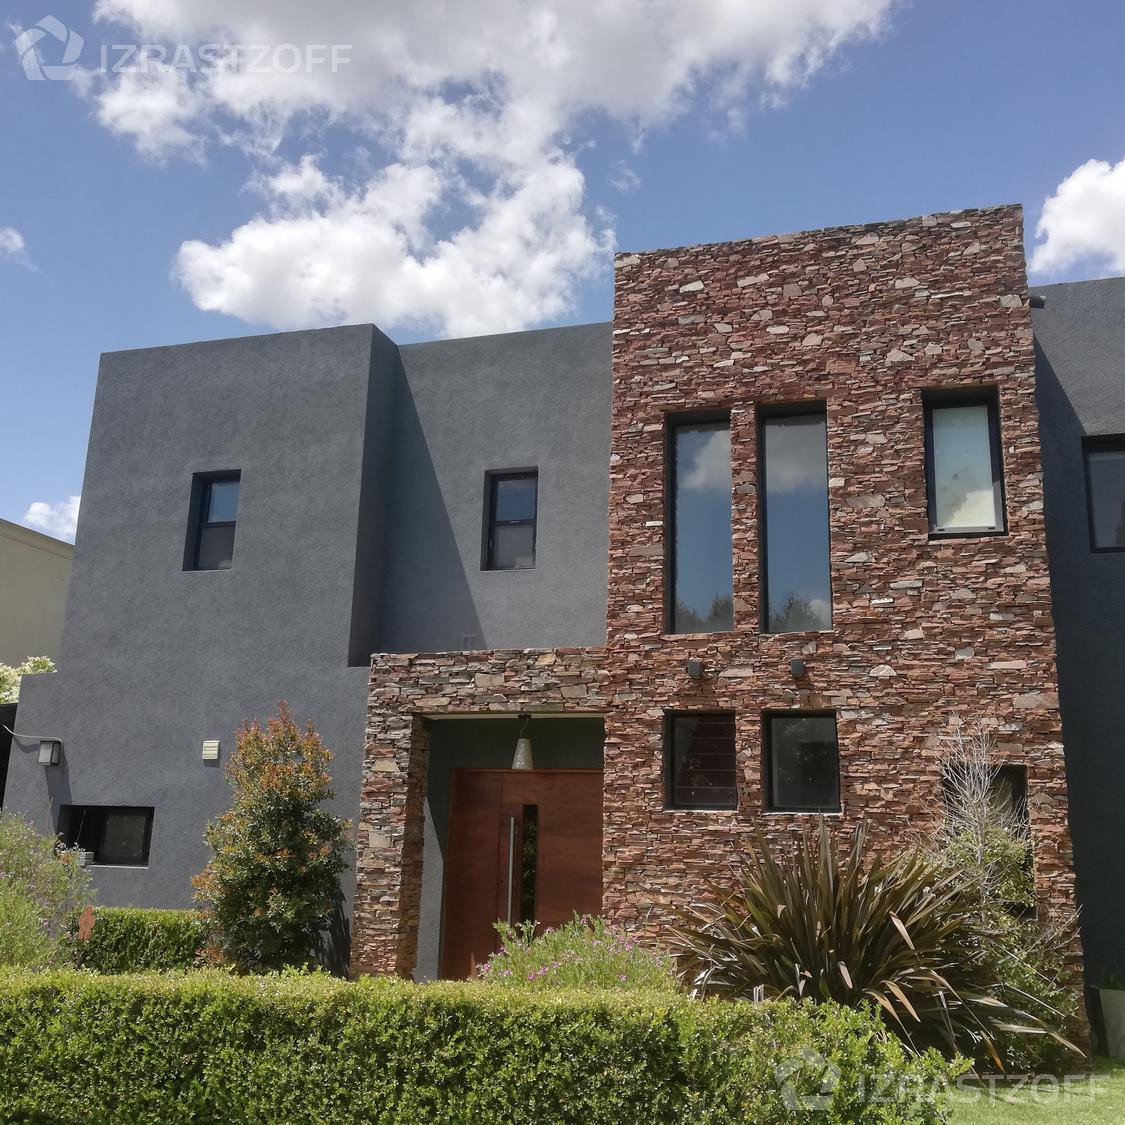 #4706517 | Temporary Rental | House | Las Liebres (Izrastzoff Agentes Inmobiliarios)